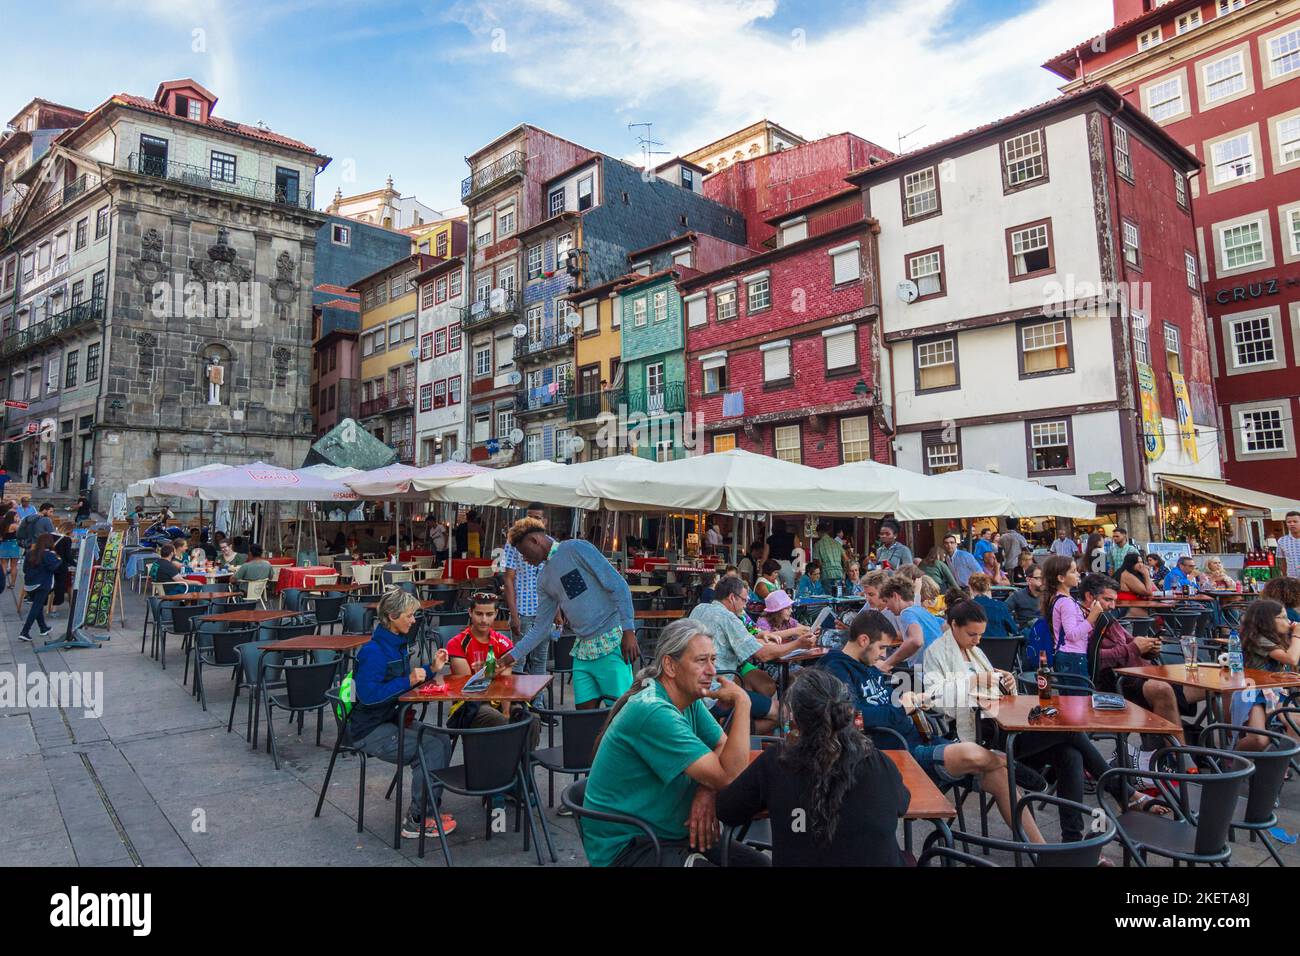 Porto, Portogallo - 26th luglio 2018 : la gente siede in un caffè all'aperto nel quartiere di Ribeira, patrimonio dell'umanità dell'UNESCO. Foto Stock